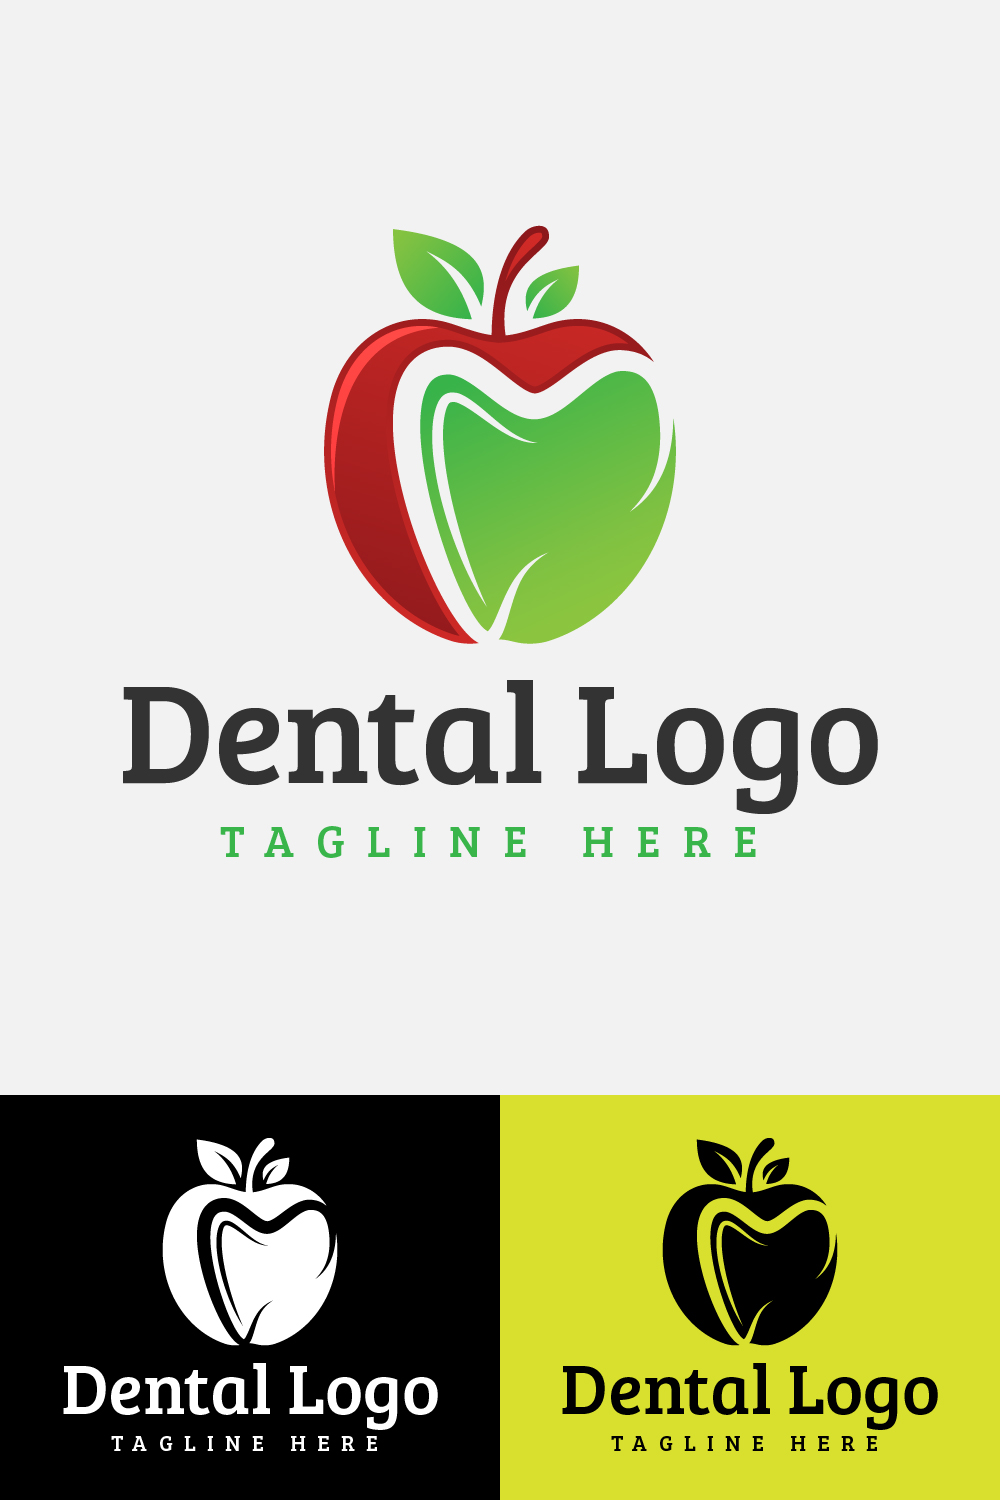 Apple Dental Logo pinterest image.